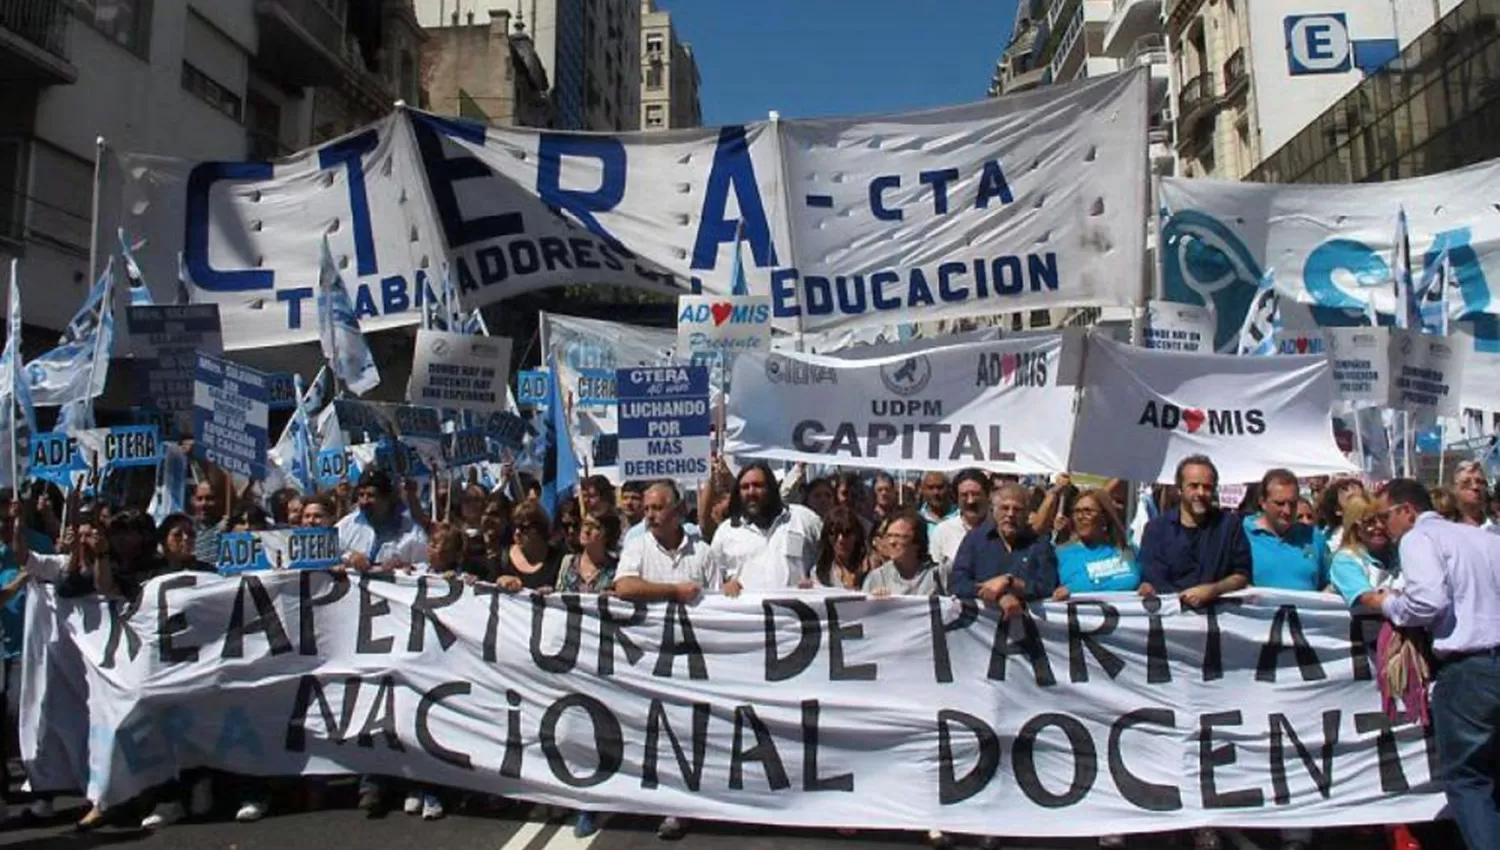 Ctera convocó a un paro nacional para el 24 de octubre, día en que el Congreso tratará el Presupuesto 2019